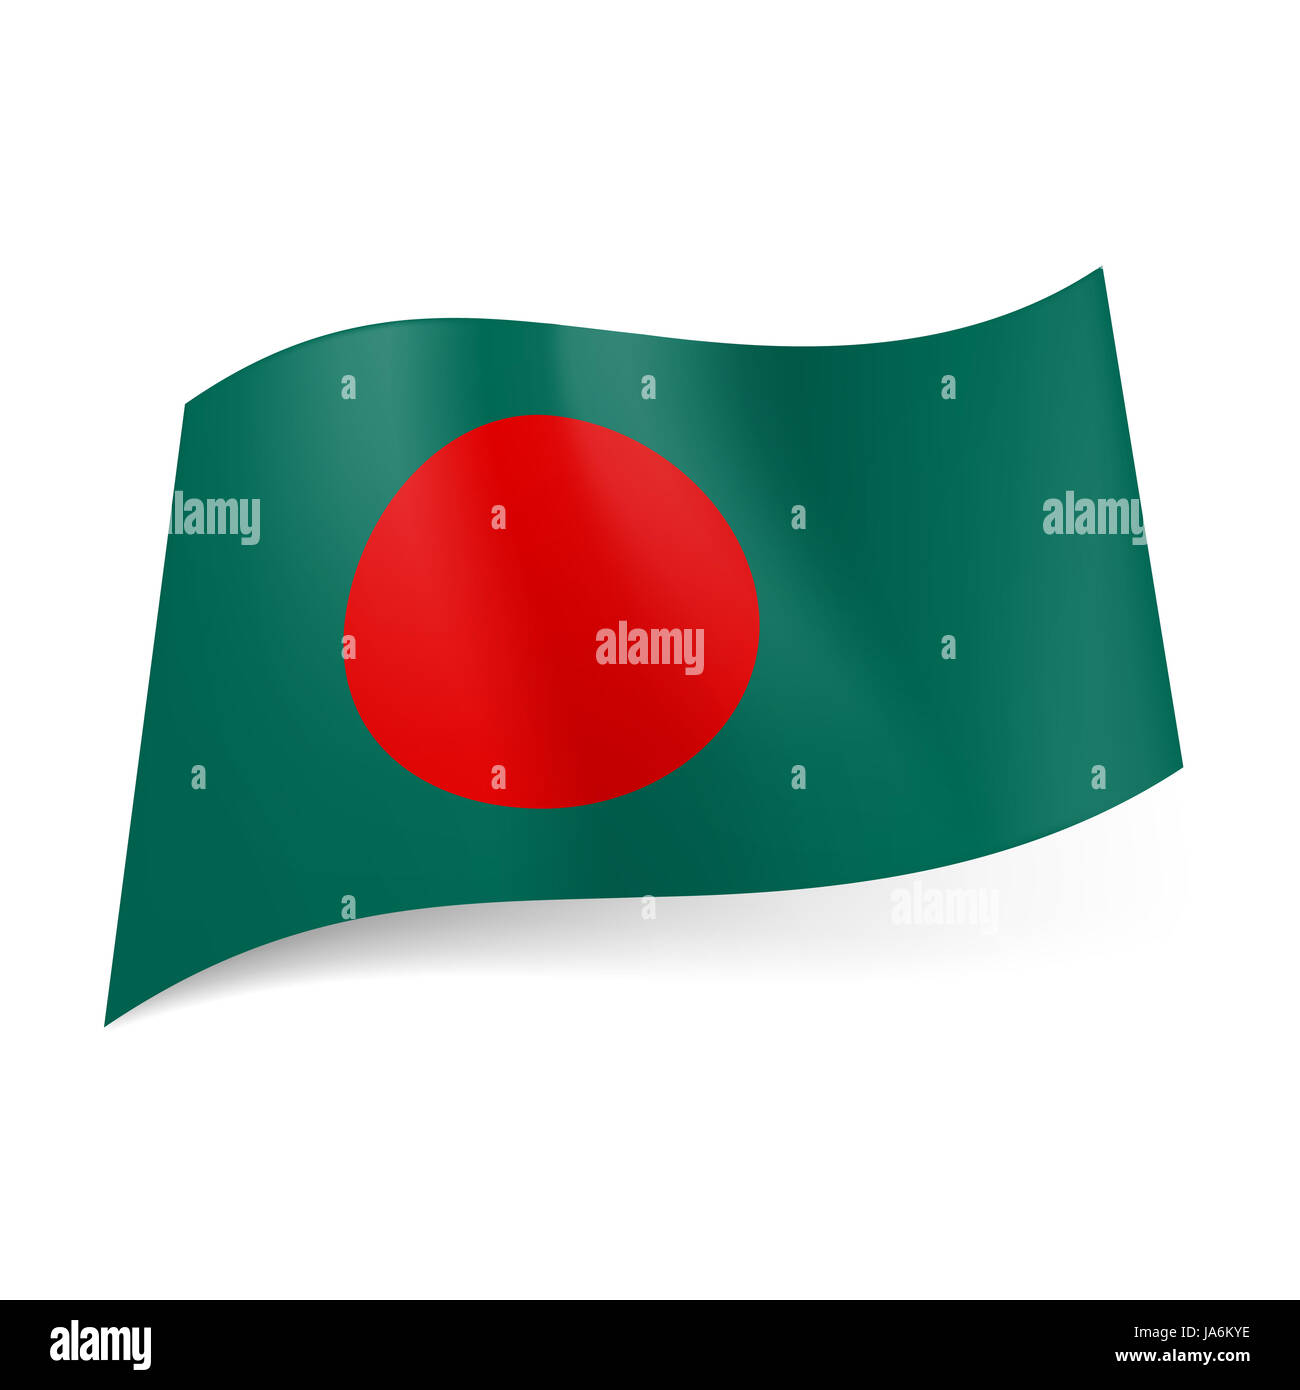 Hãy chiêm ngưỡng hình ảnh Quốc kỳ Bangladesh với sắc đỏ tươi sáng và một ngôi sao trắng lấp lánh giữa lòng cờ. Một biểu tượng của tình yêu quê hương và niềm tự hào dân tộc đang chờ bạn khám phá.